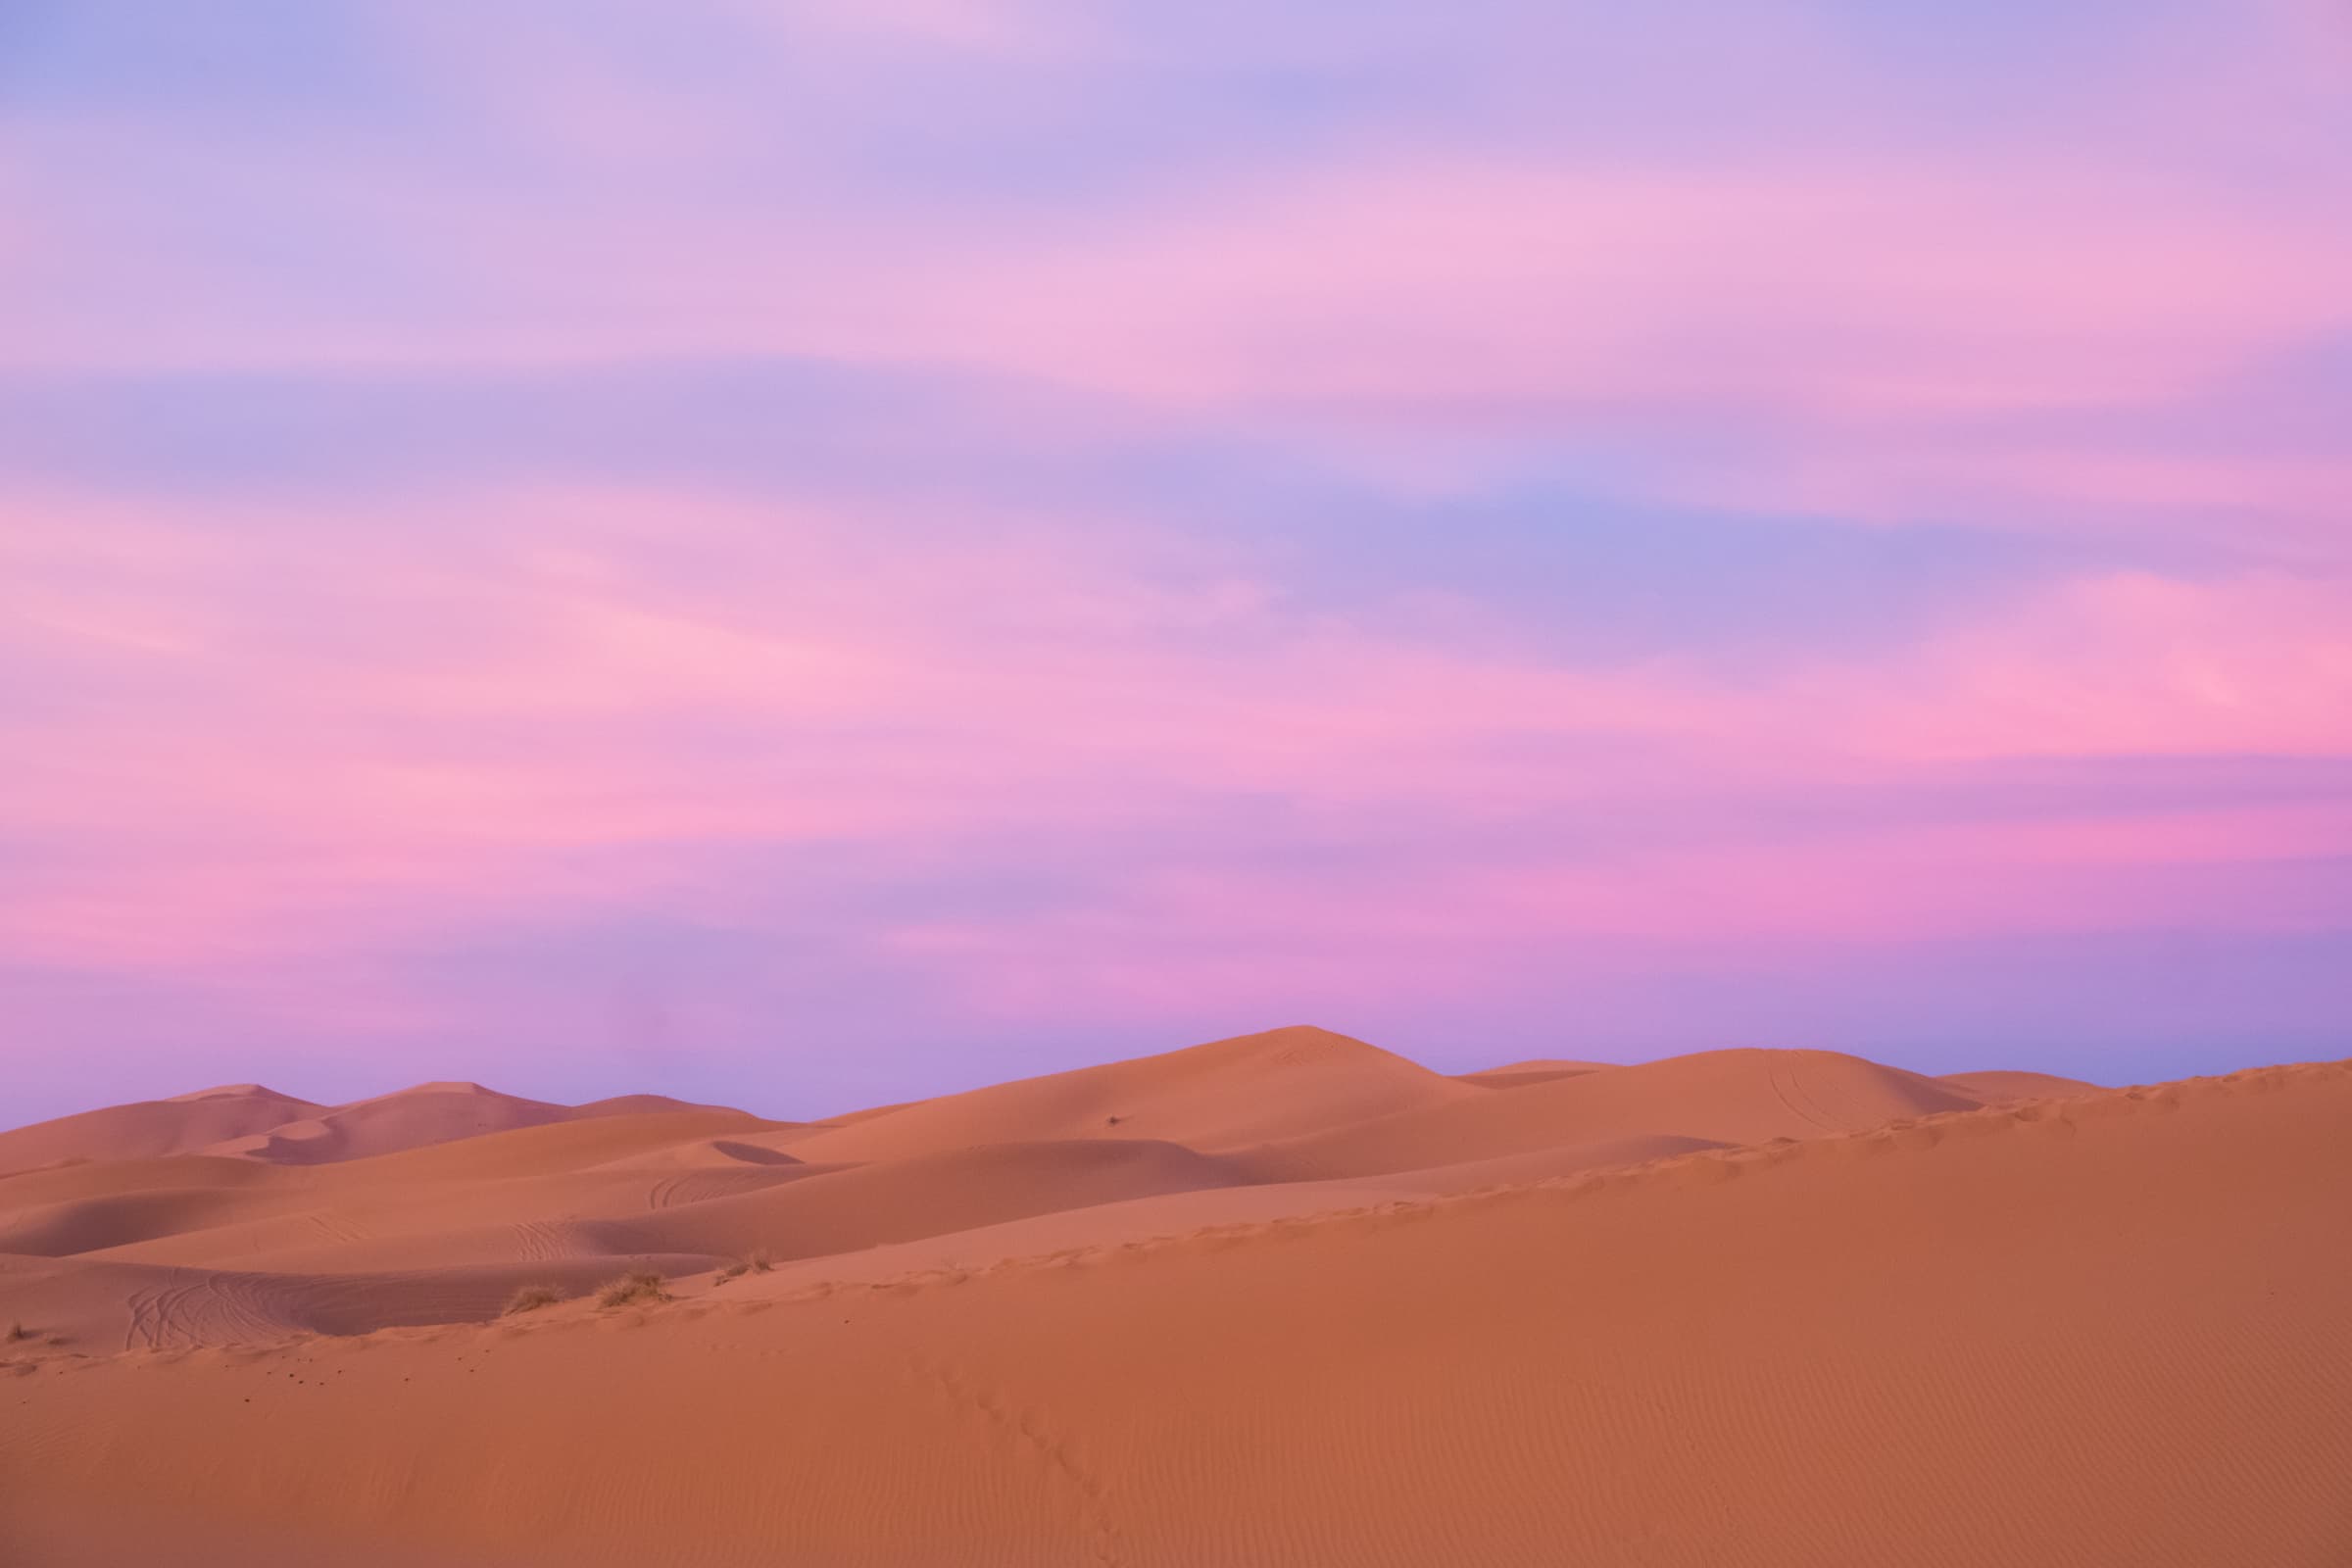 Pink sunrise in the Sahara desert